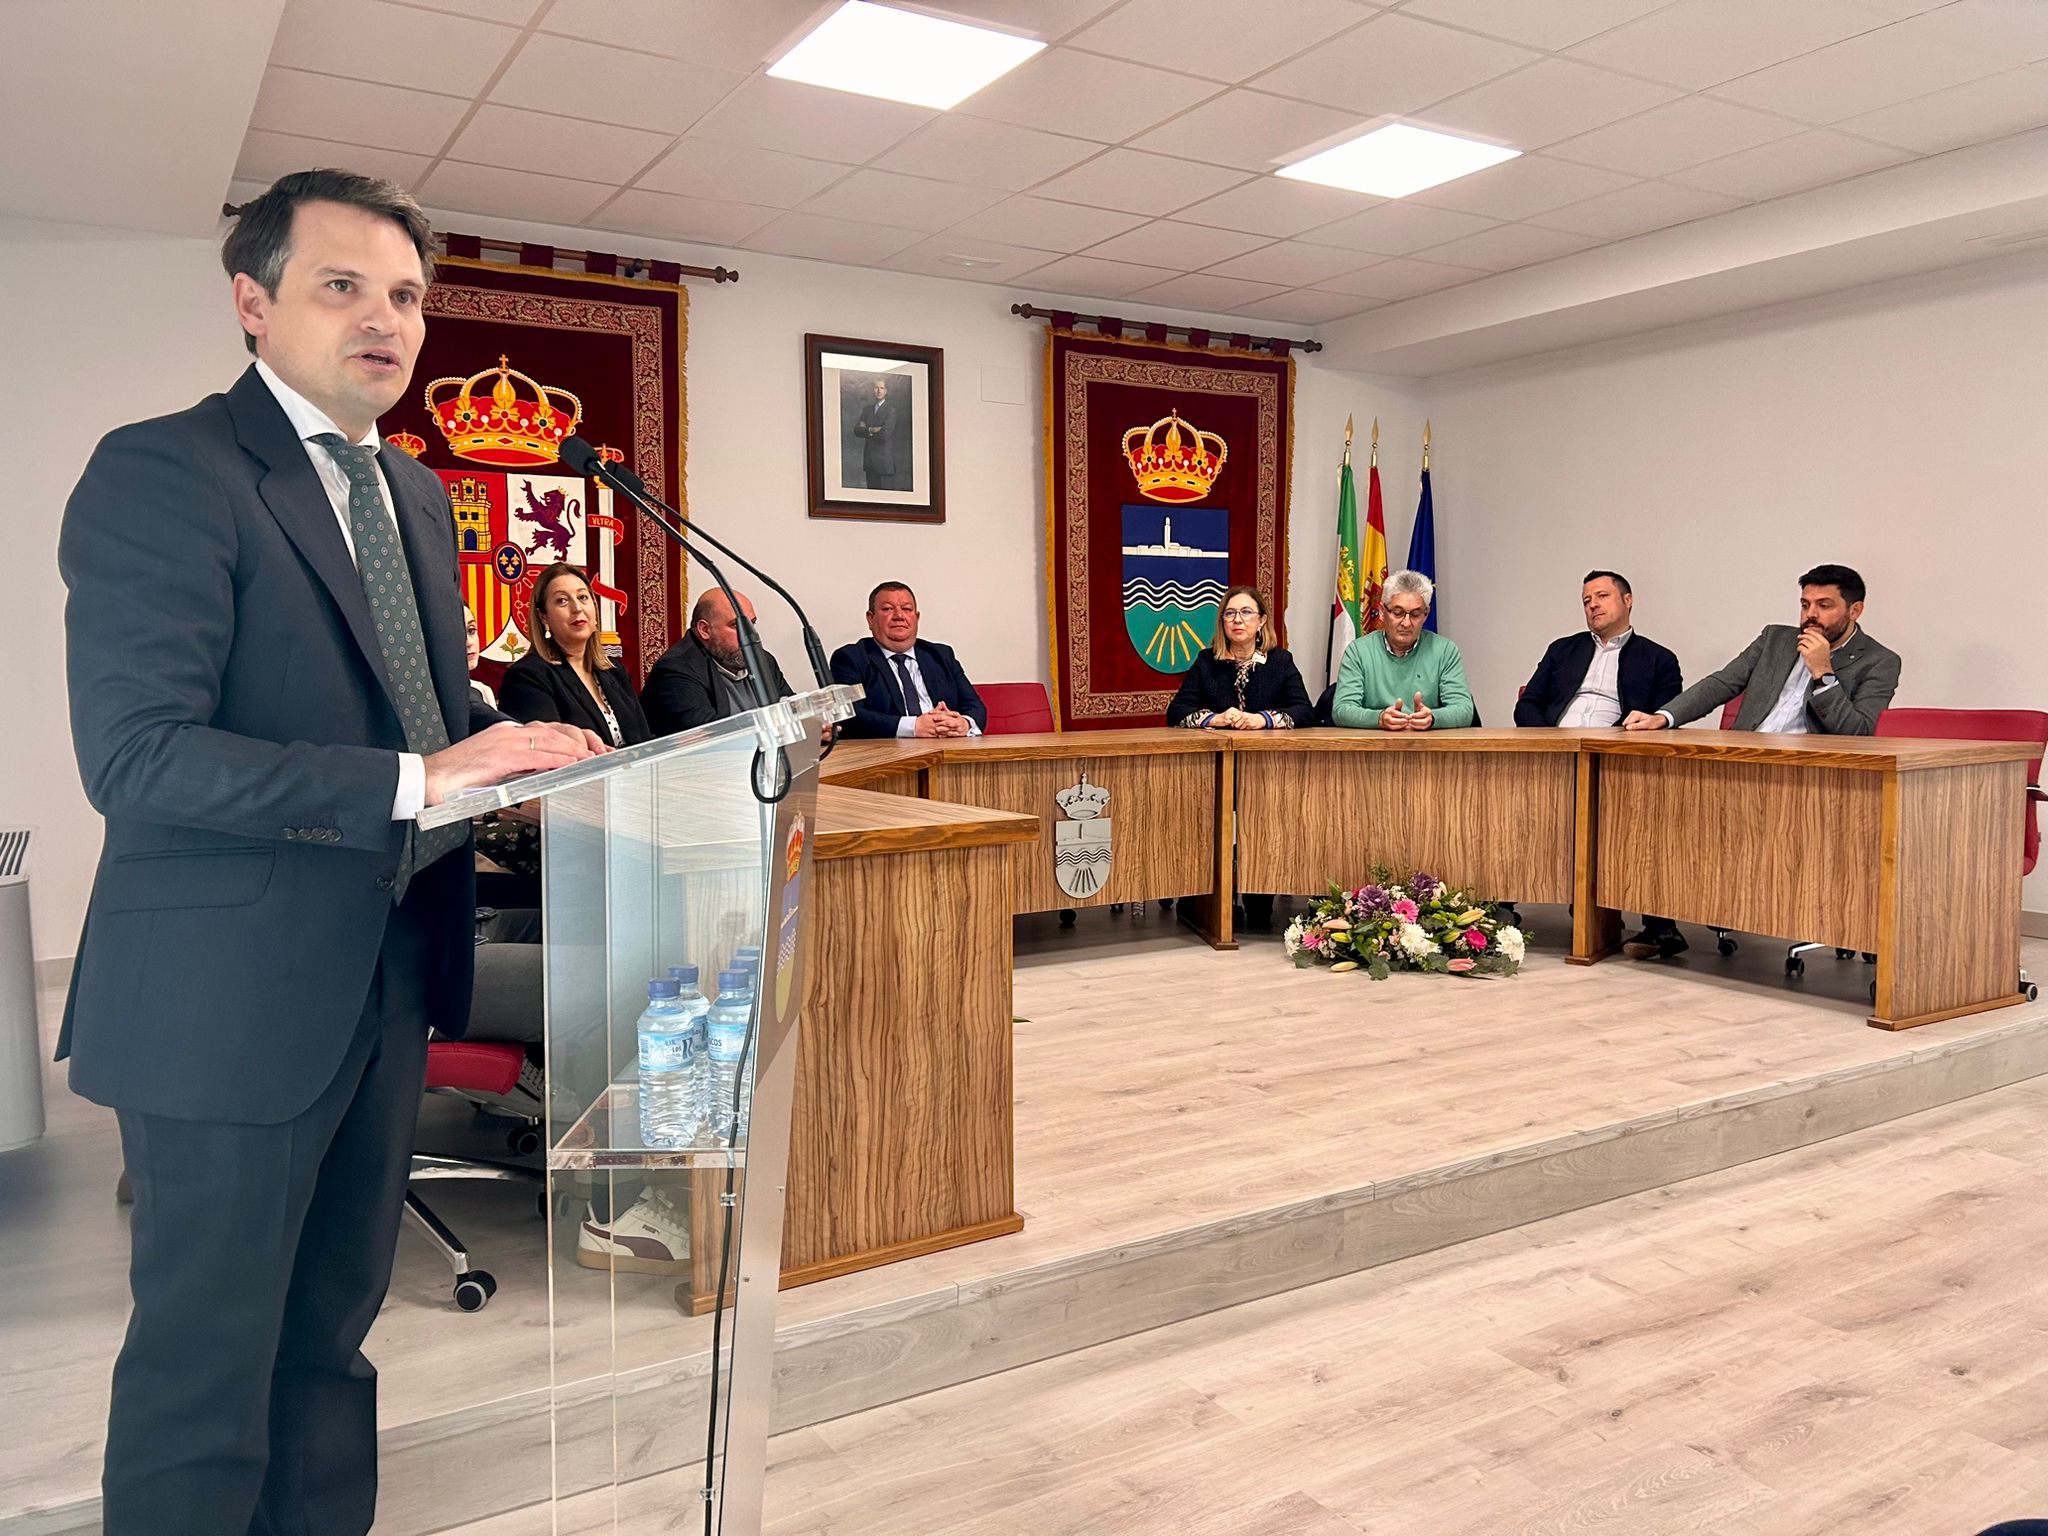 Image 2 of article Abel Bautista inaugura las obras de reforma del Ayuntamiento de Pueblonuevo del Guadiana